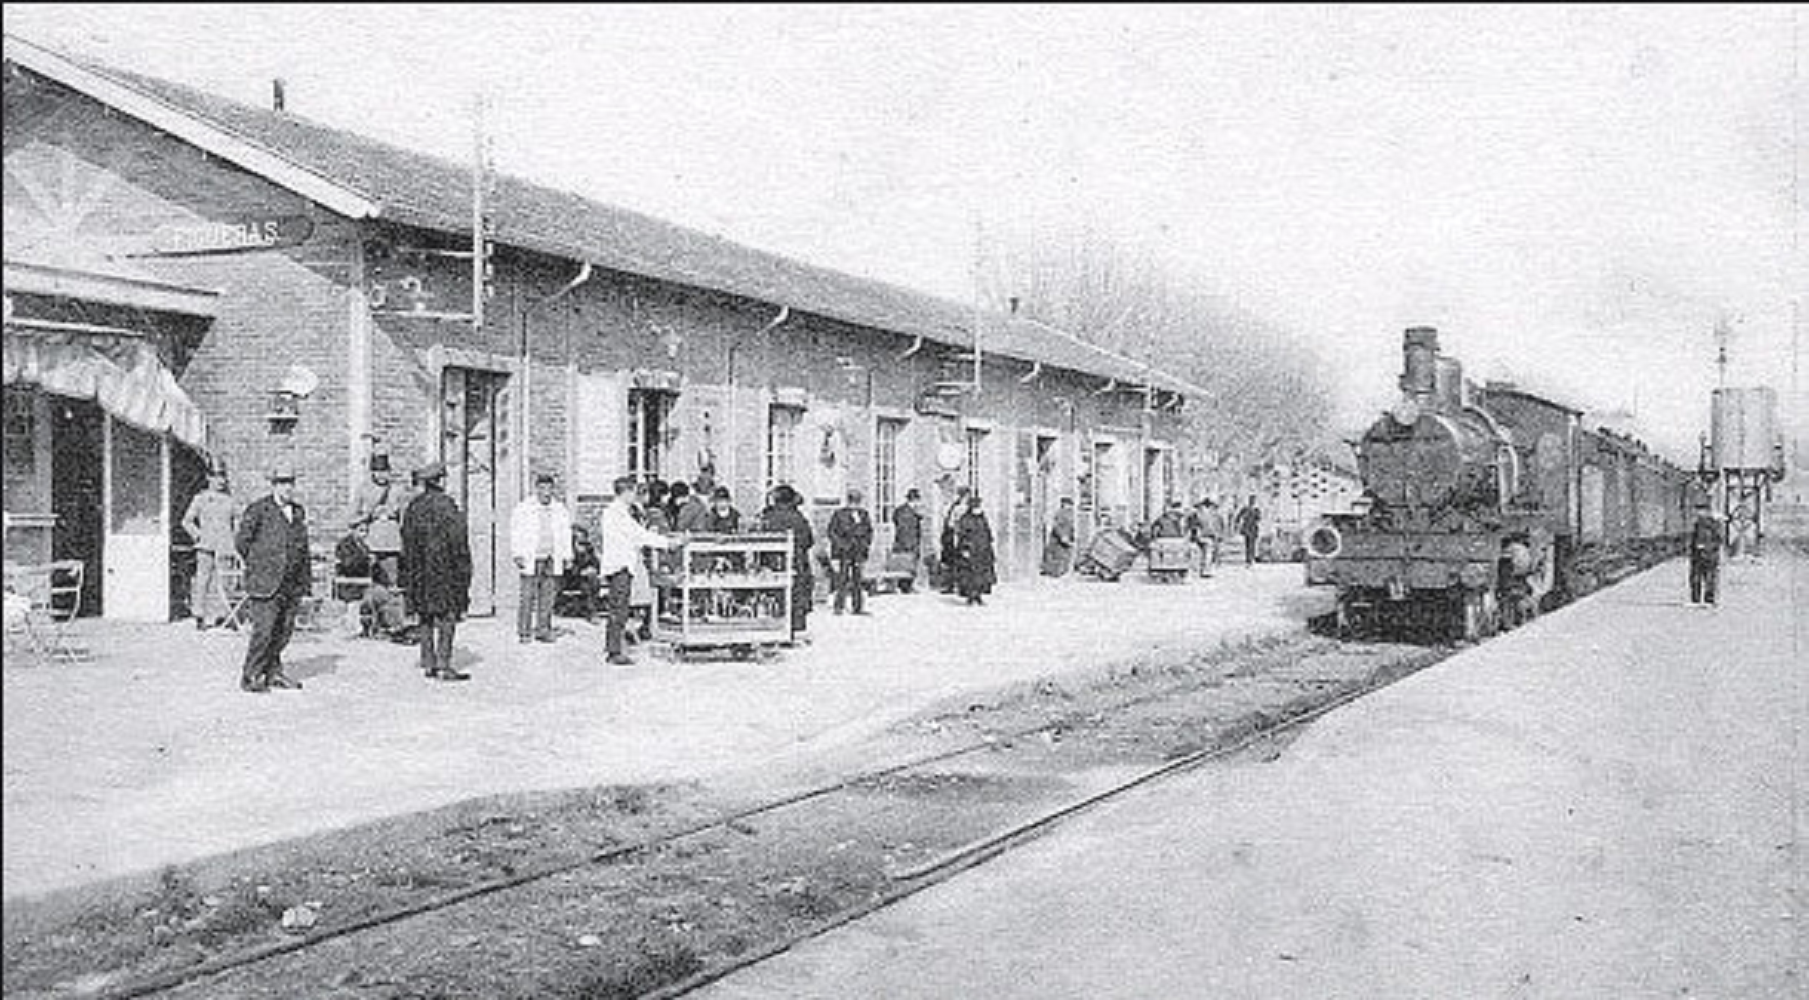 Llega el primer tren a Figueres, que busca la conexión ferroviaria con Francia